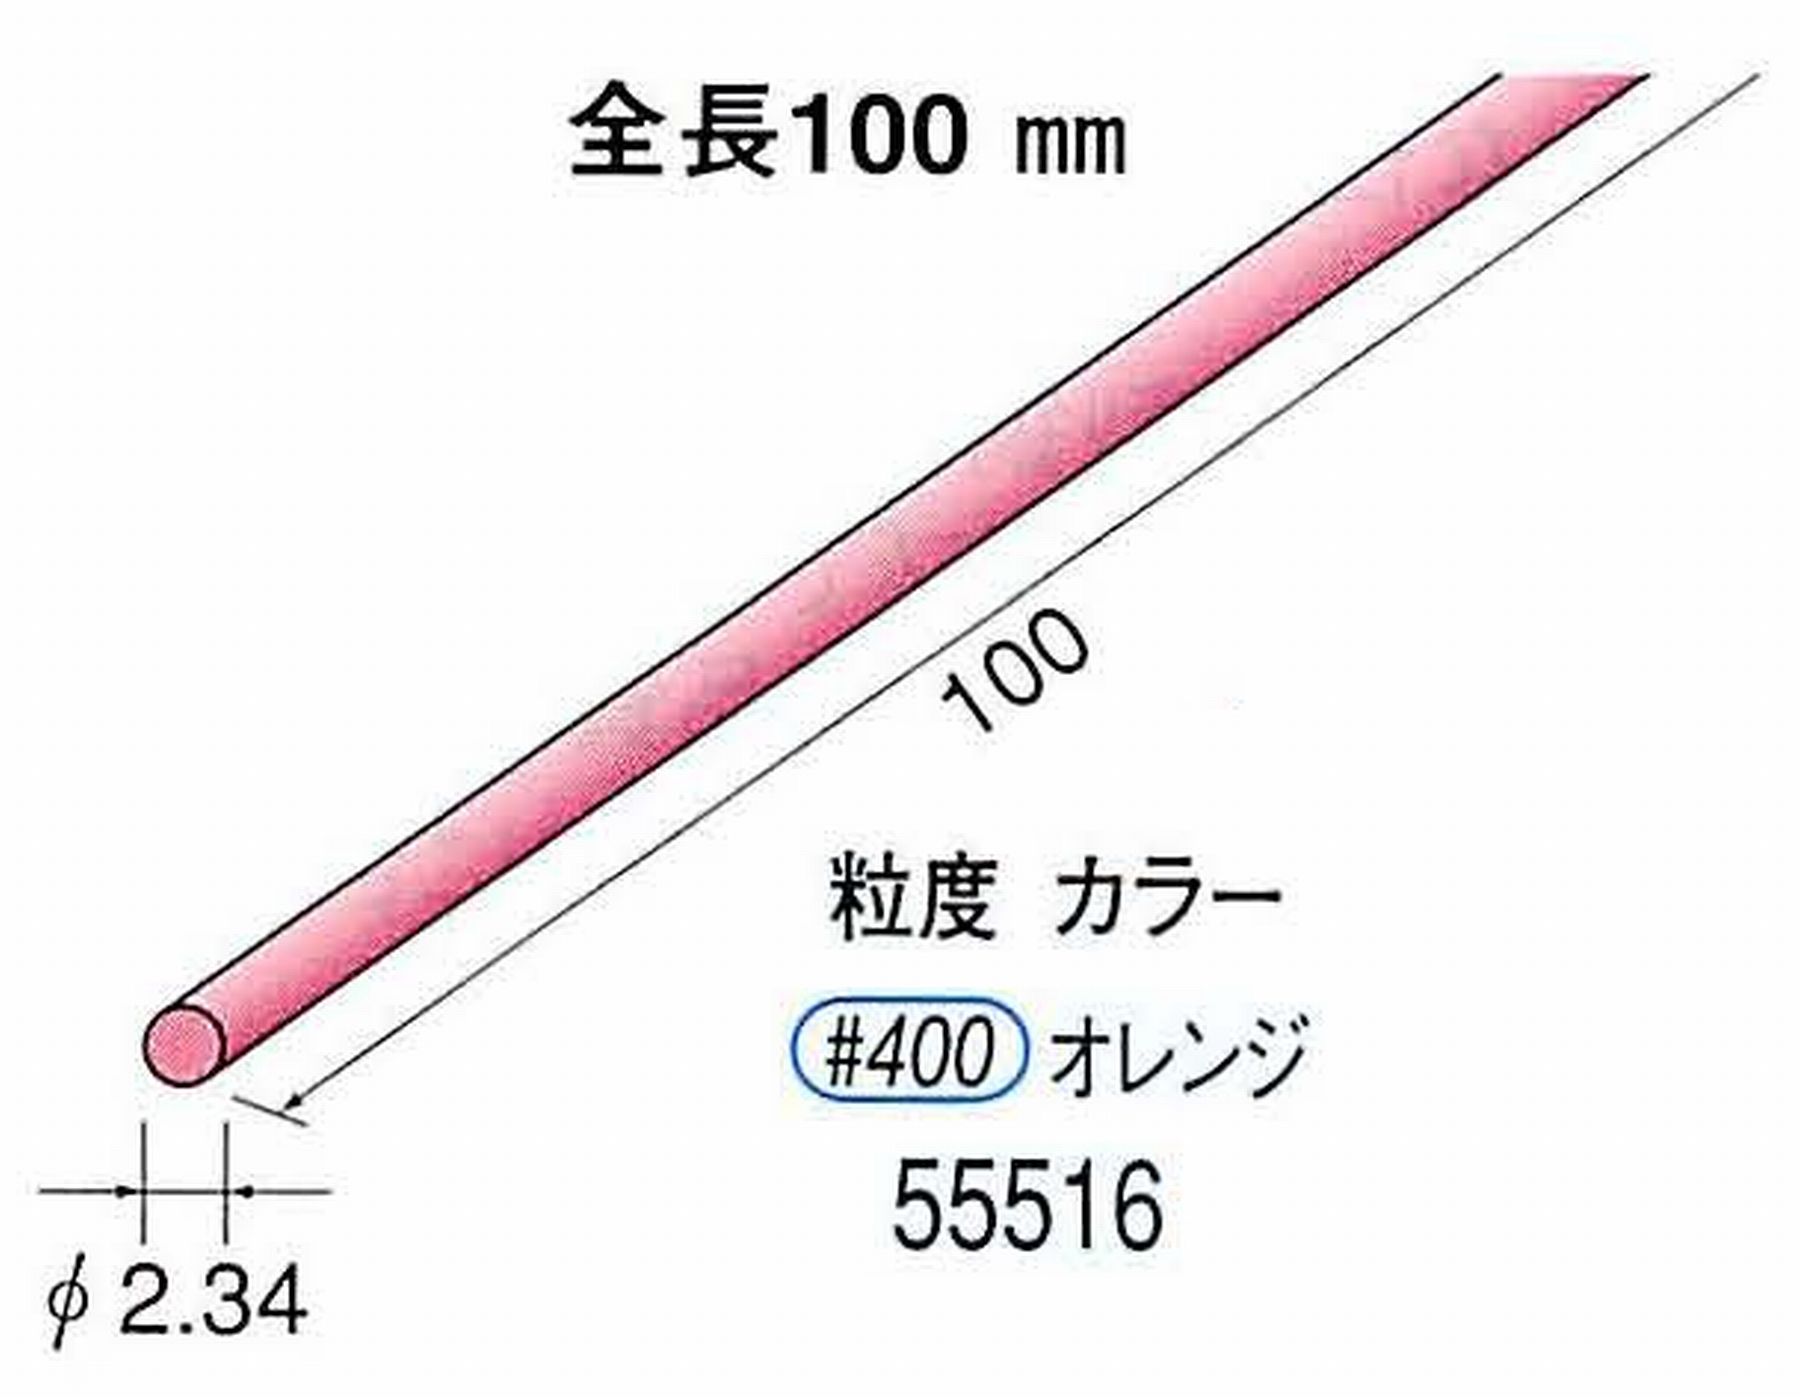 ナカニシ/NAKANISHI セラファイバー砥石 全長100mm オレンジ φ2.34mm 55516